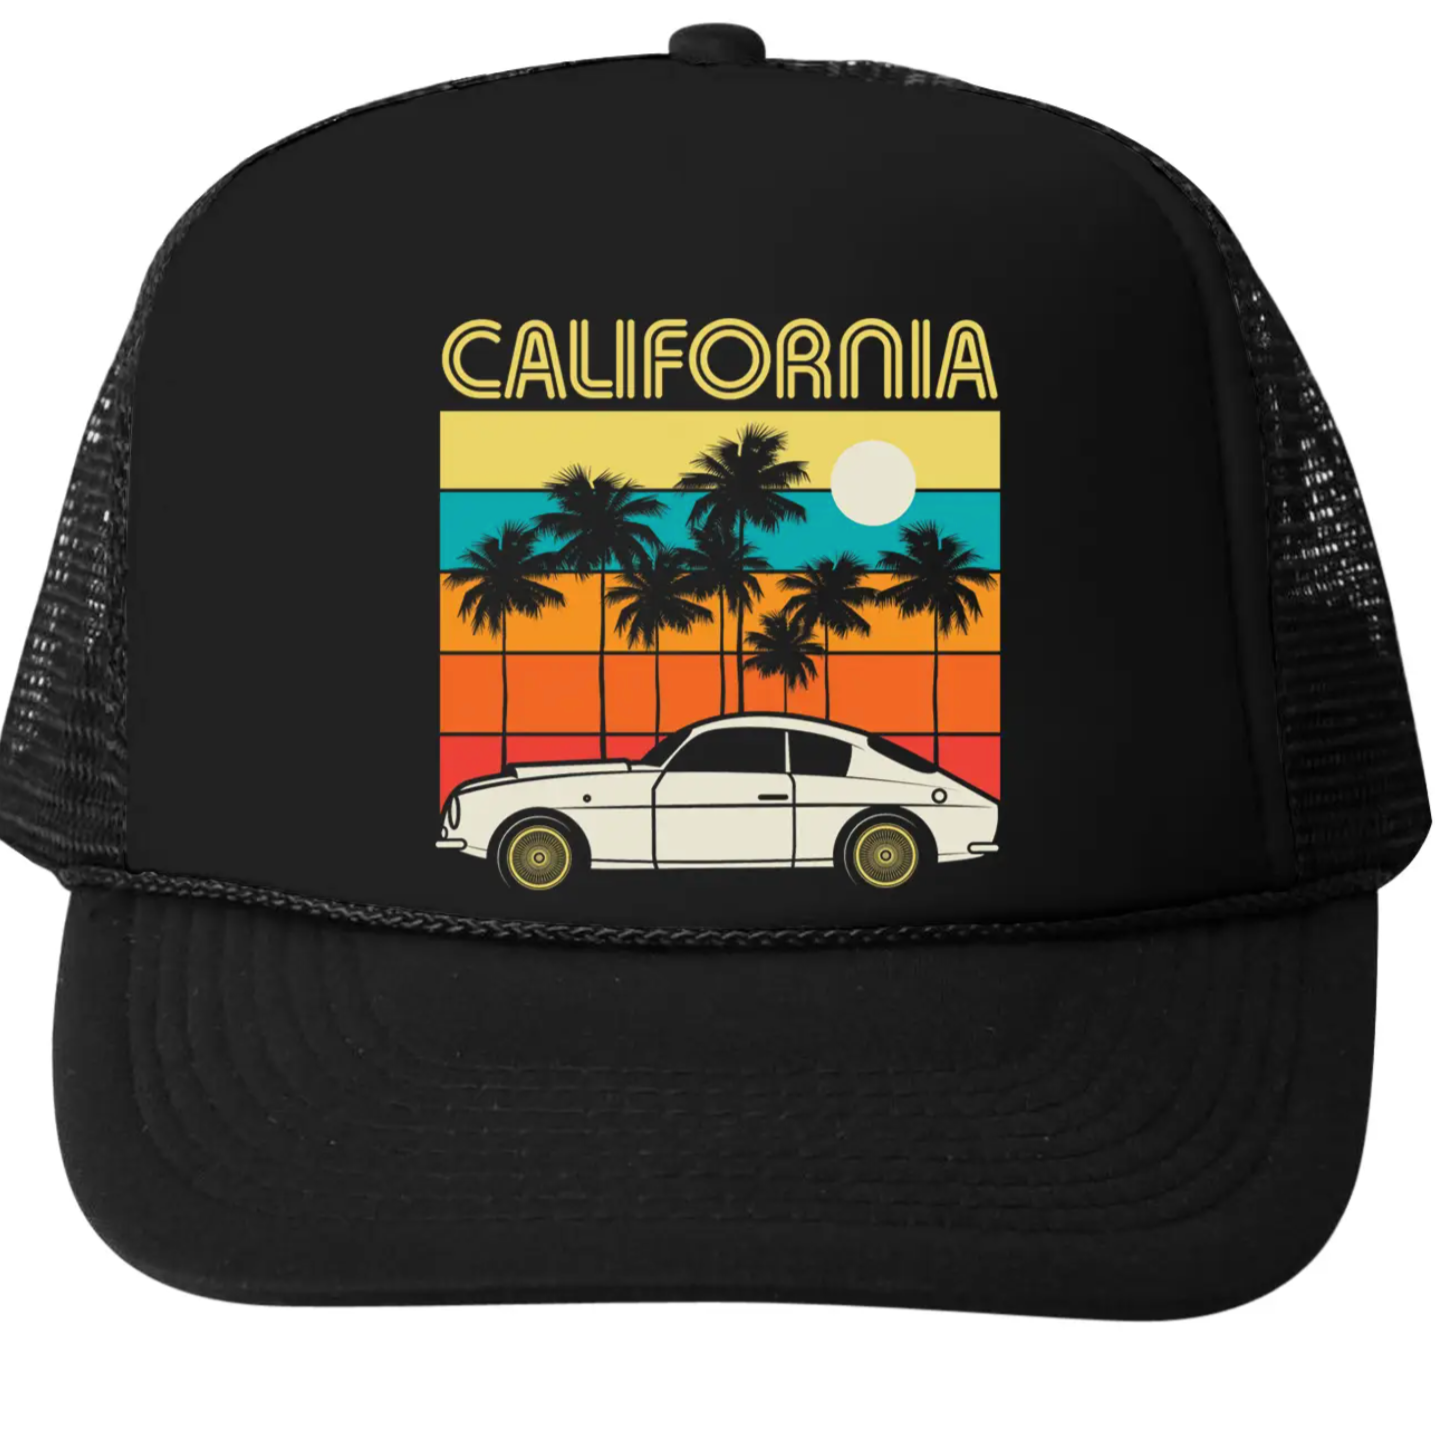 CALIFORNIA turbo truck hat in black